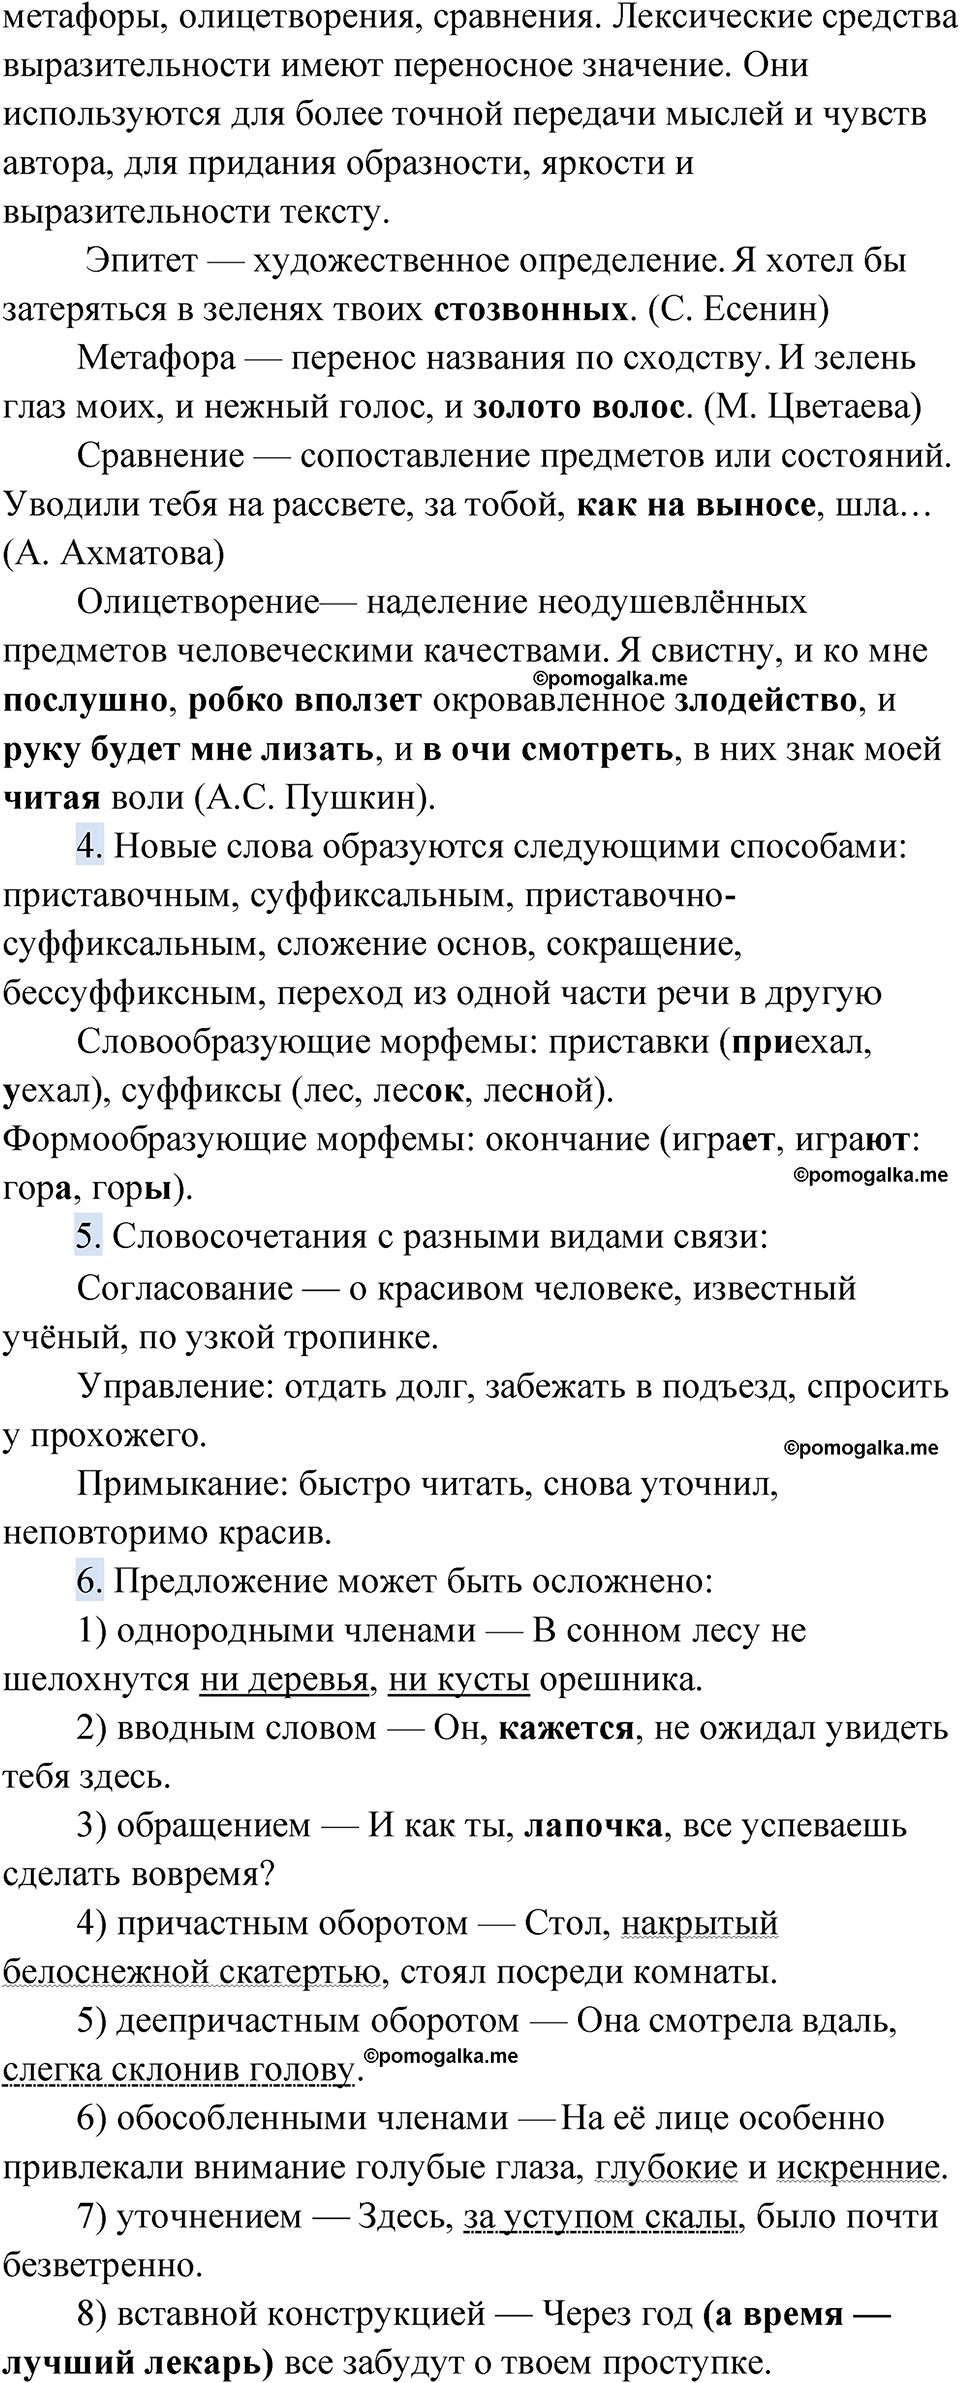 страница 119 Проверяем себя русский язык 9 класс Быстрова 1 часть 2022 год